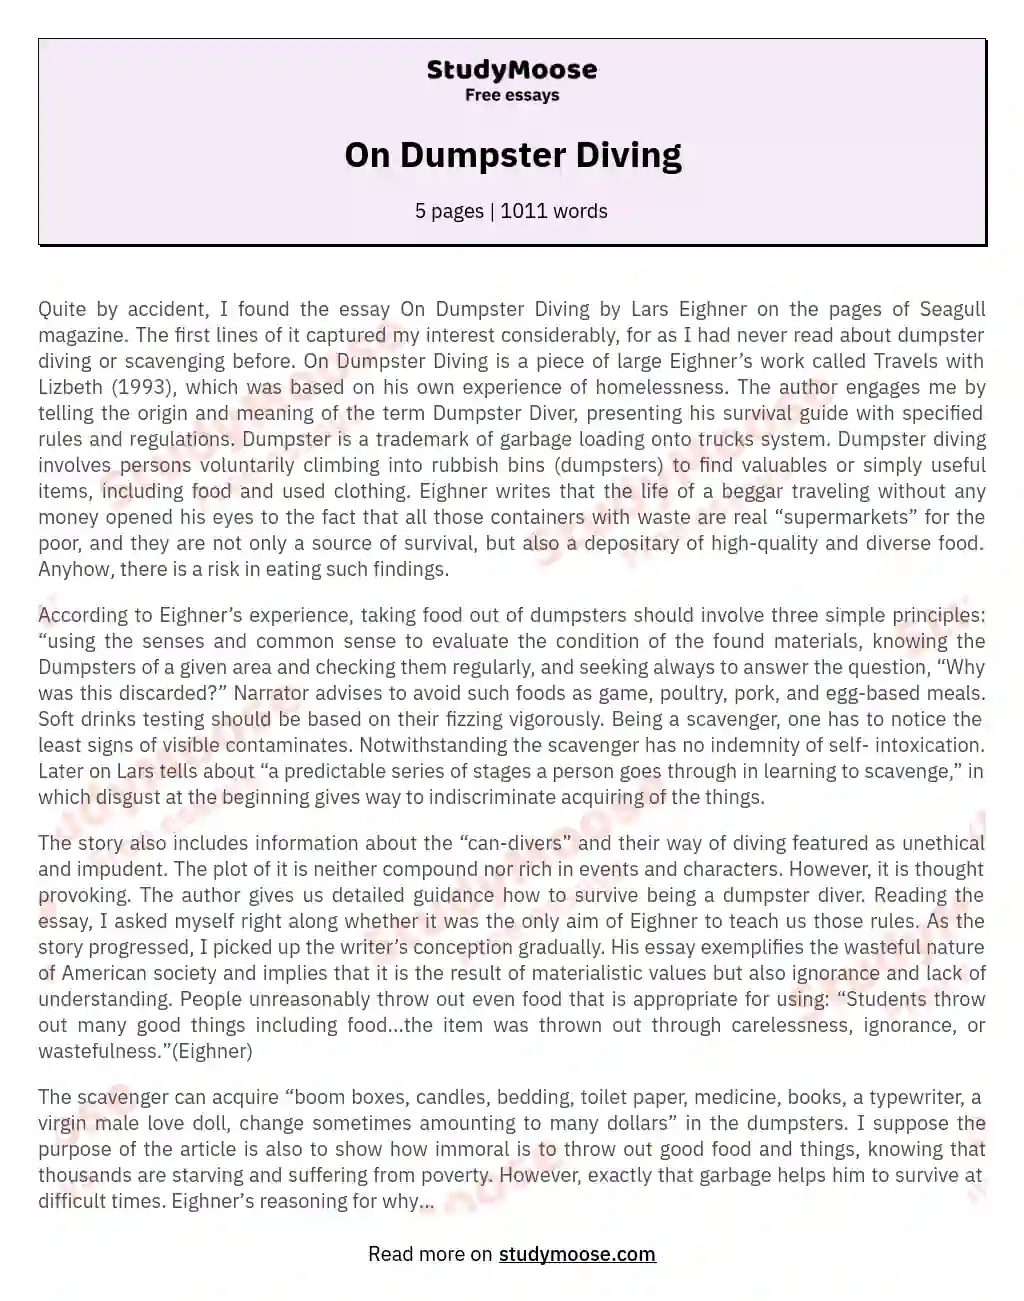 On Dumpster Diving essay